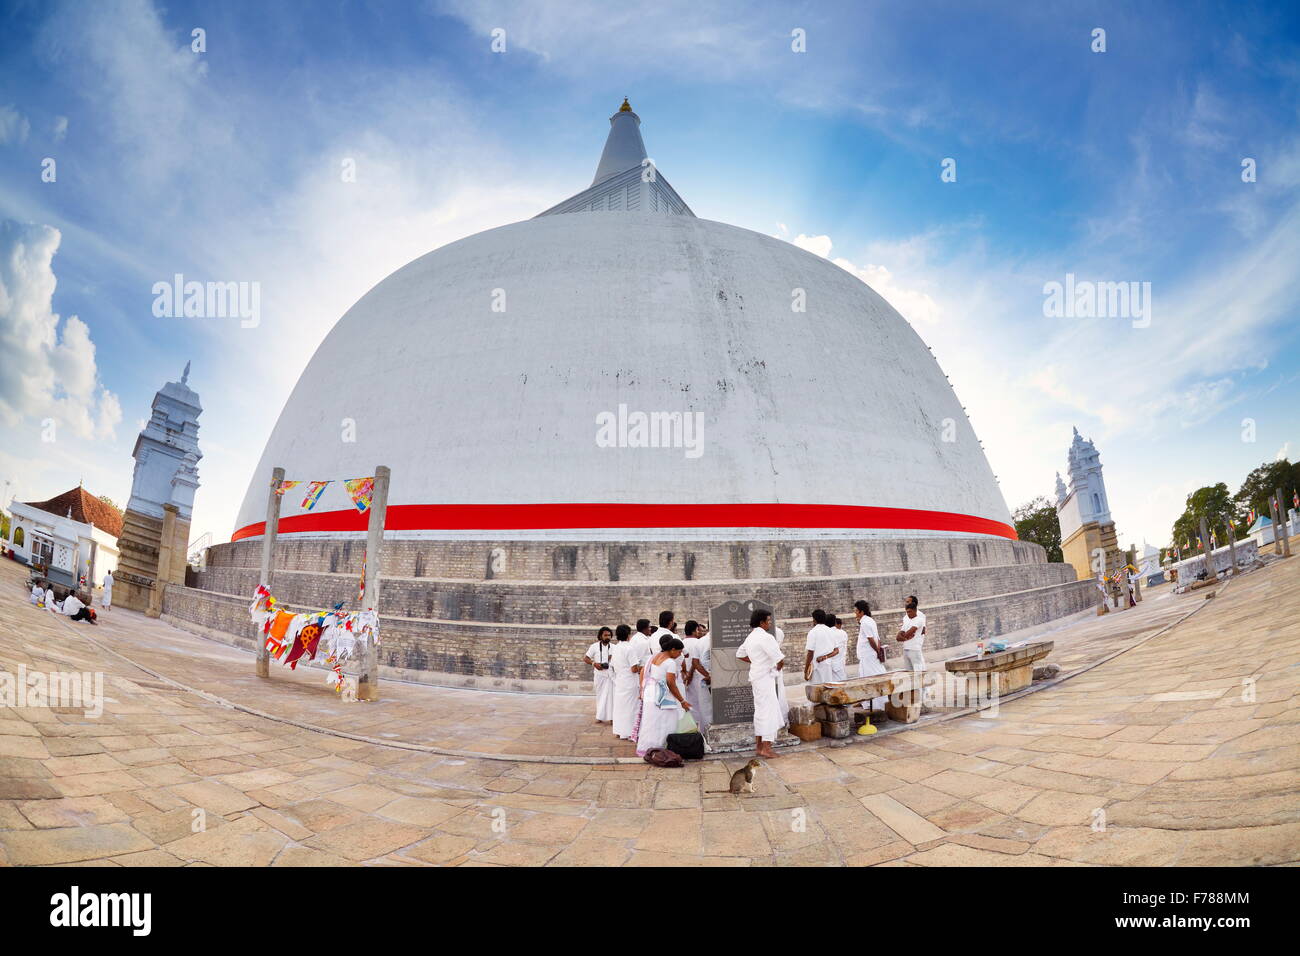 Sri Lanka - Anuradhapura, Ruwanveliseya Dagoba stupa, UNESCO World Heritage Site Stock Photo